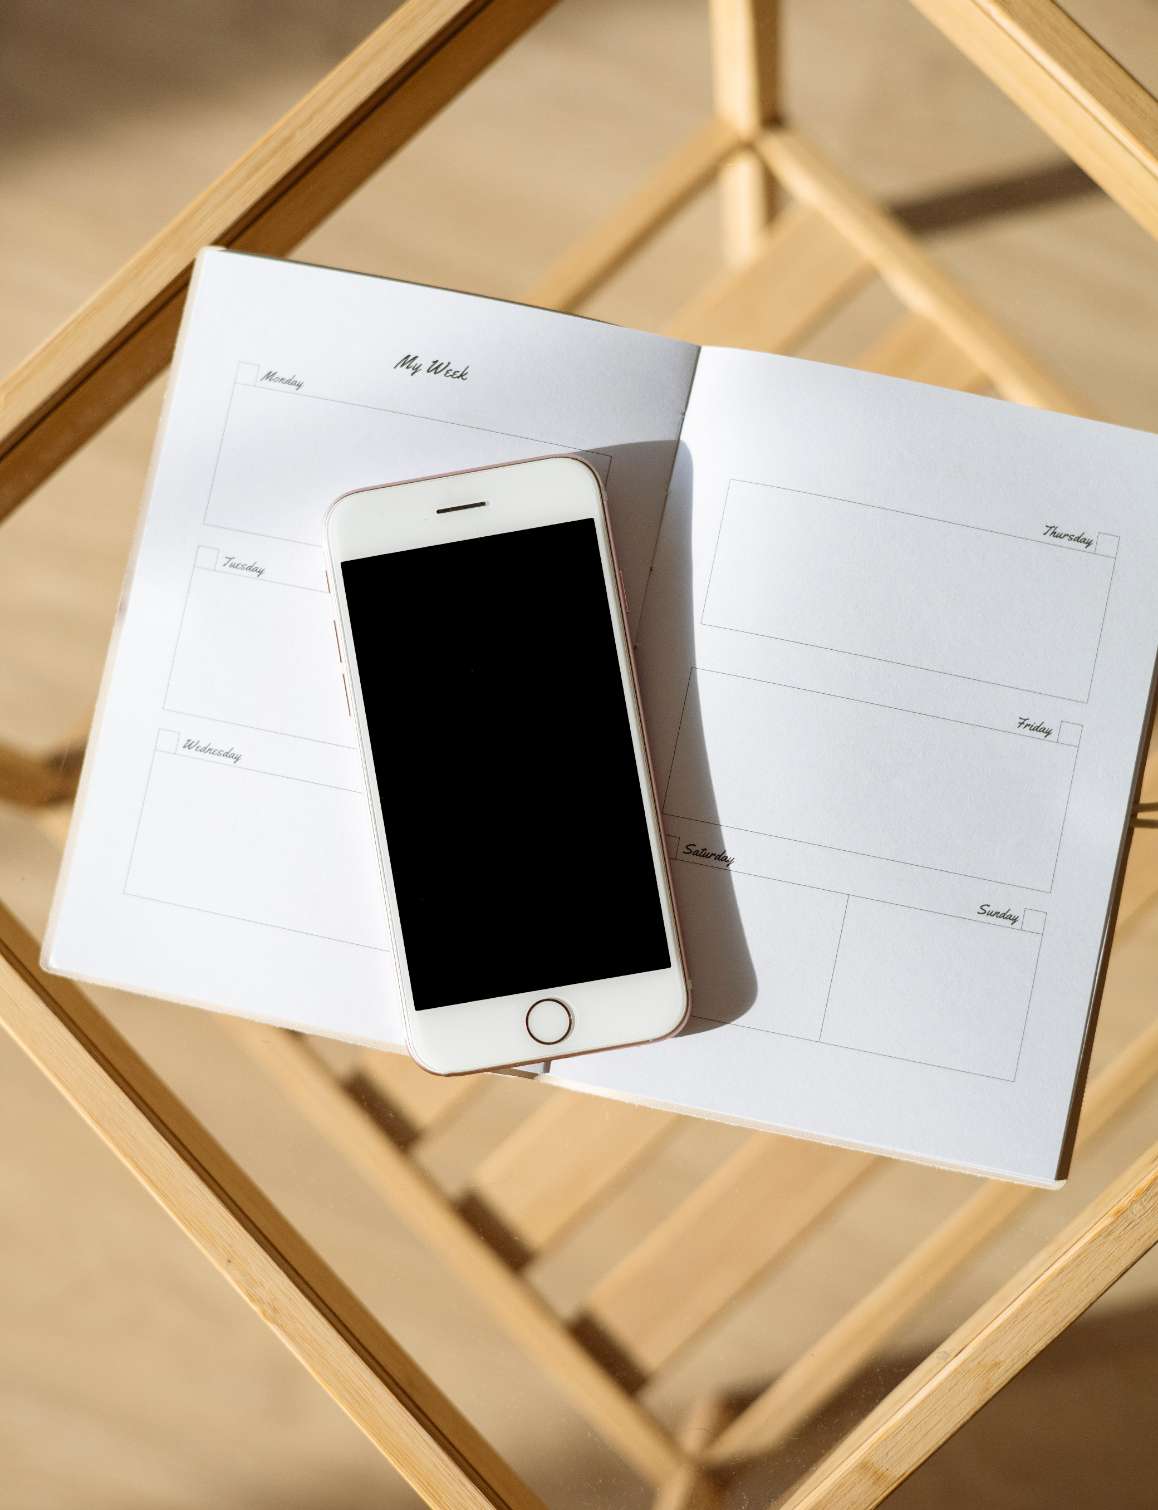 photo représentant un téléphone mobile blanc, posé sur un agenda ouvert, le tout entreposé sur un tabouret en bois ajouré